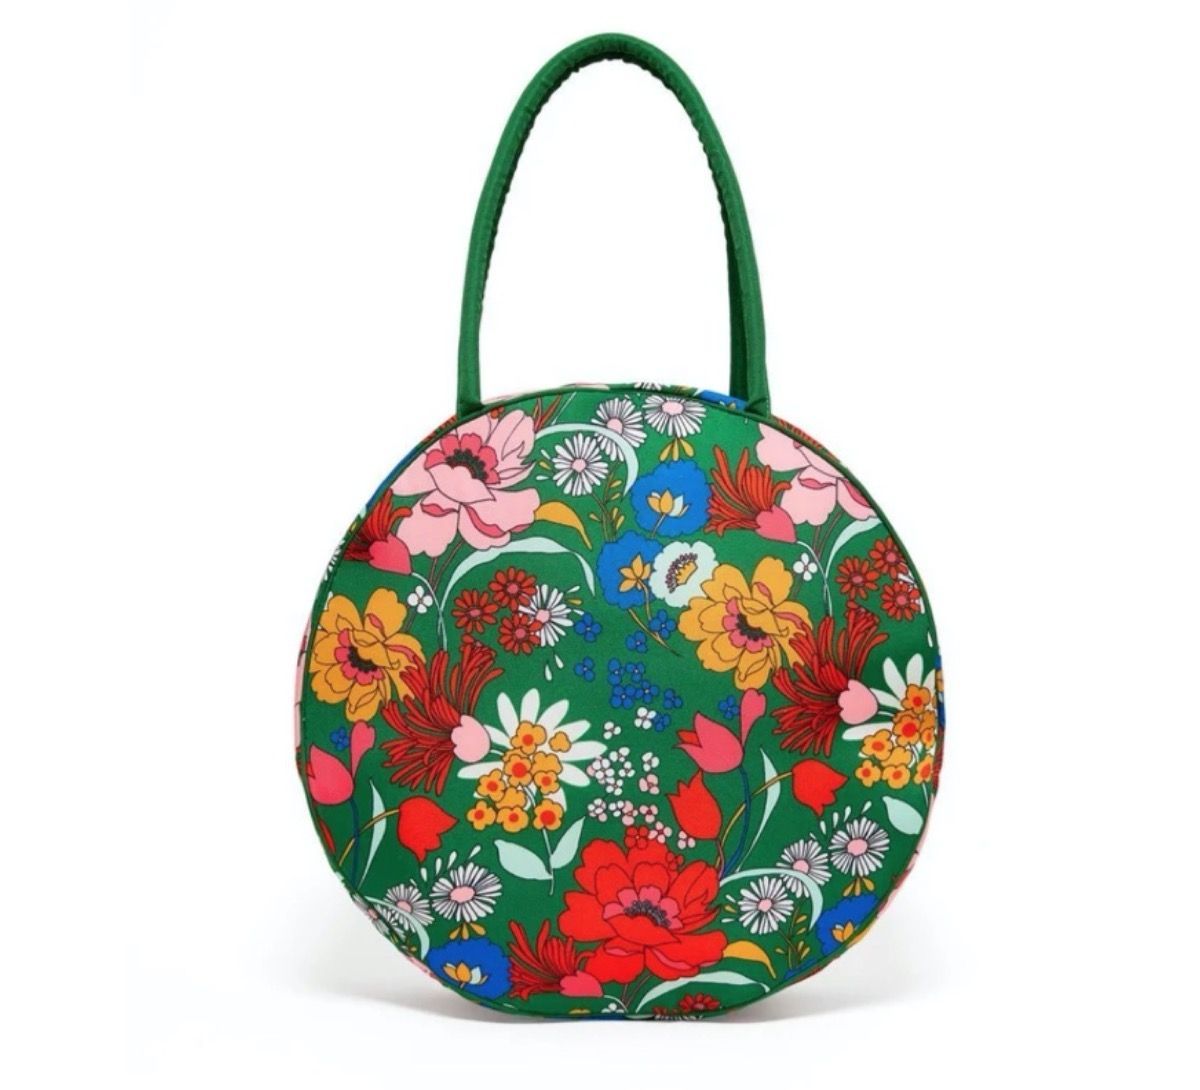 λουλουδάτη τσάντα για πικνίκ